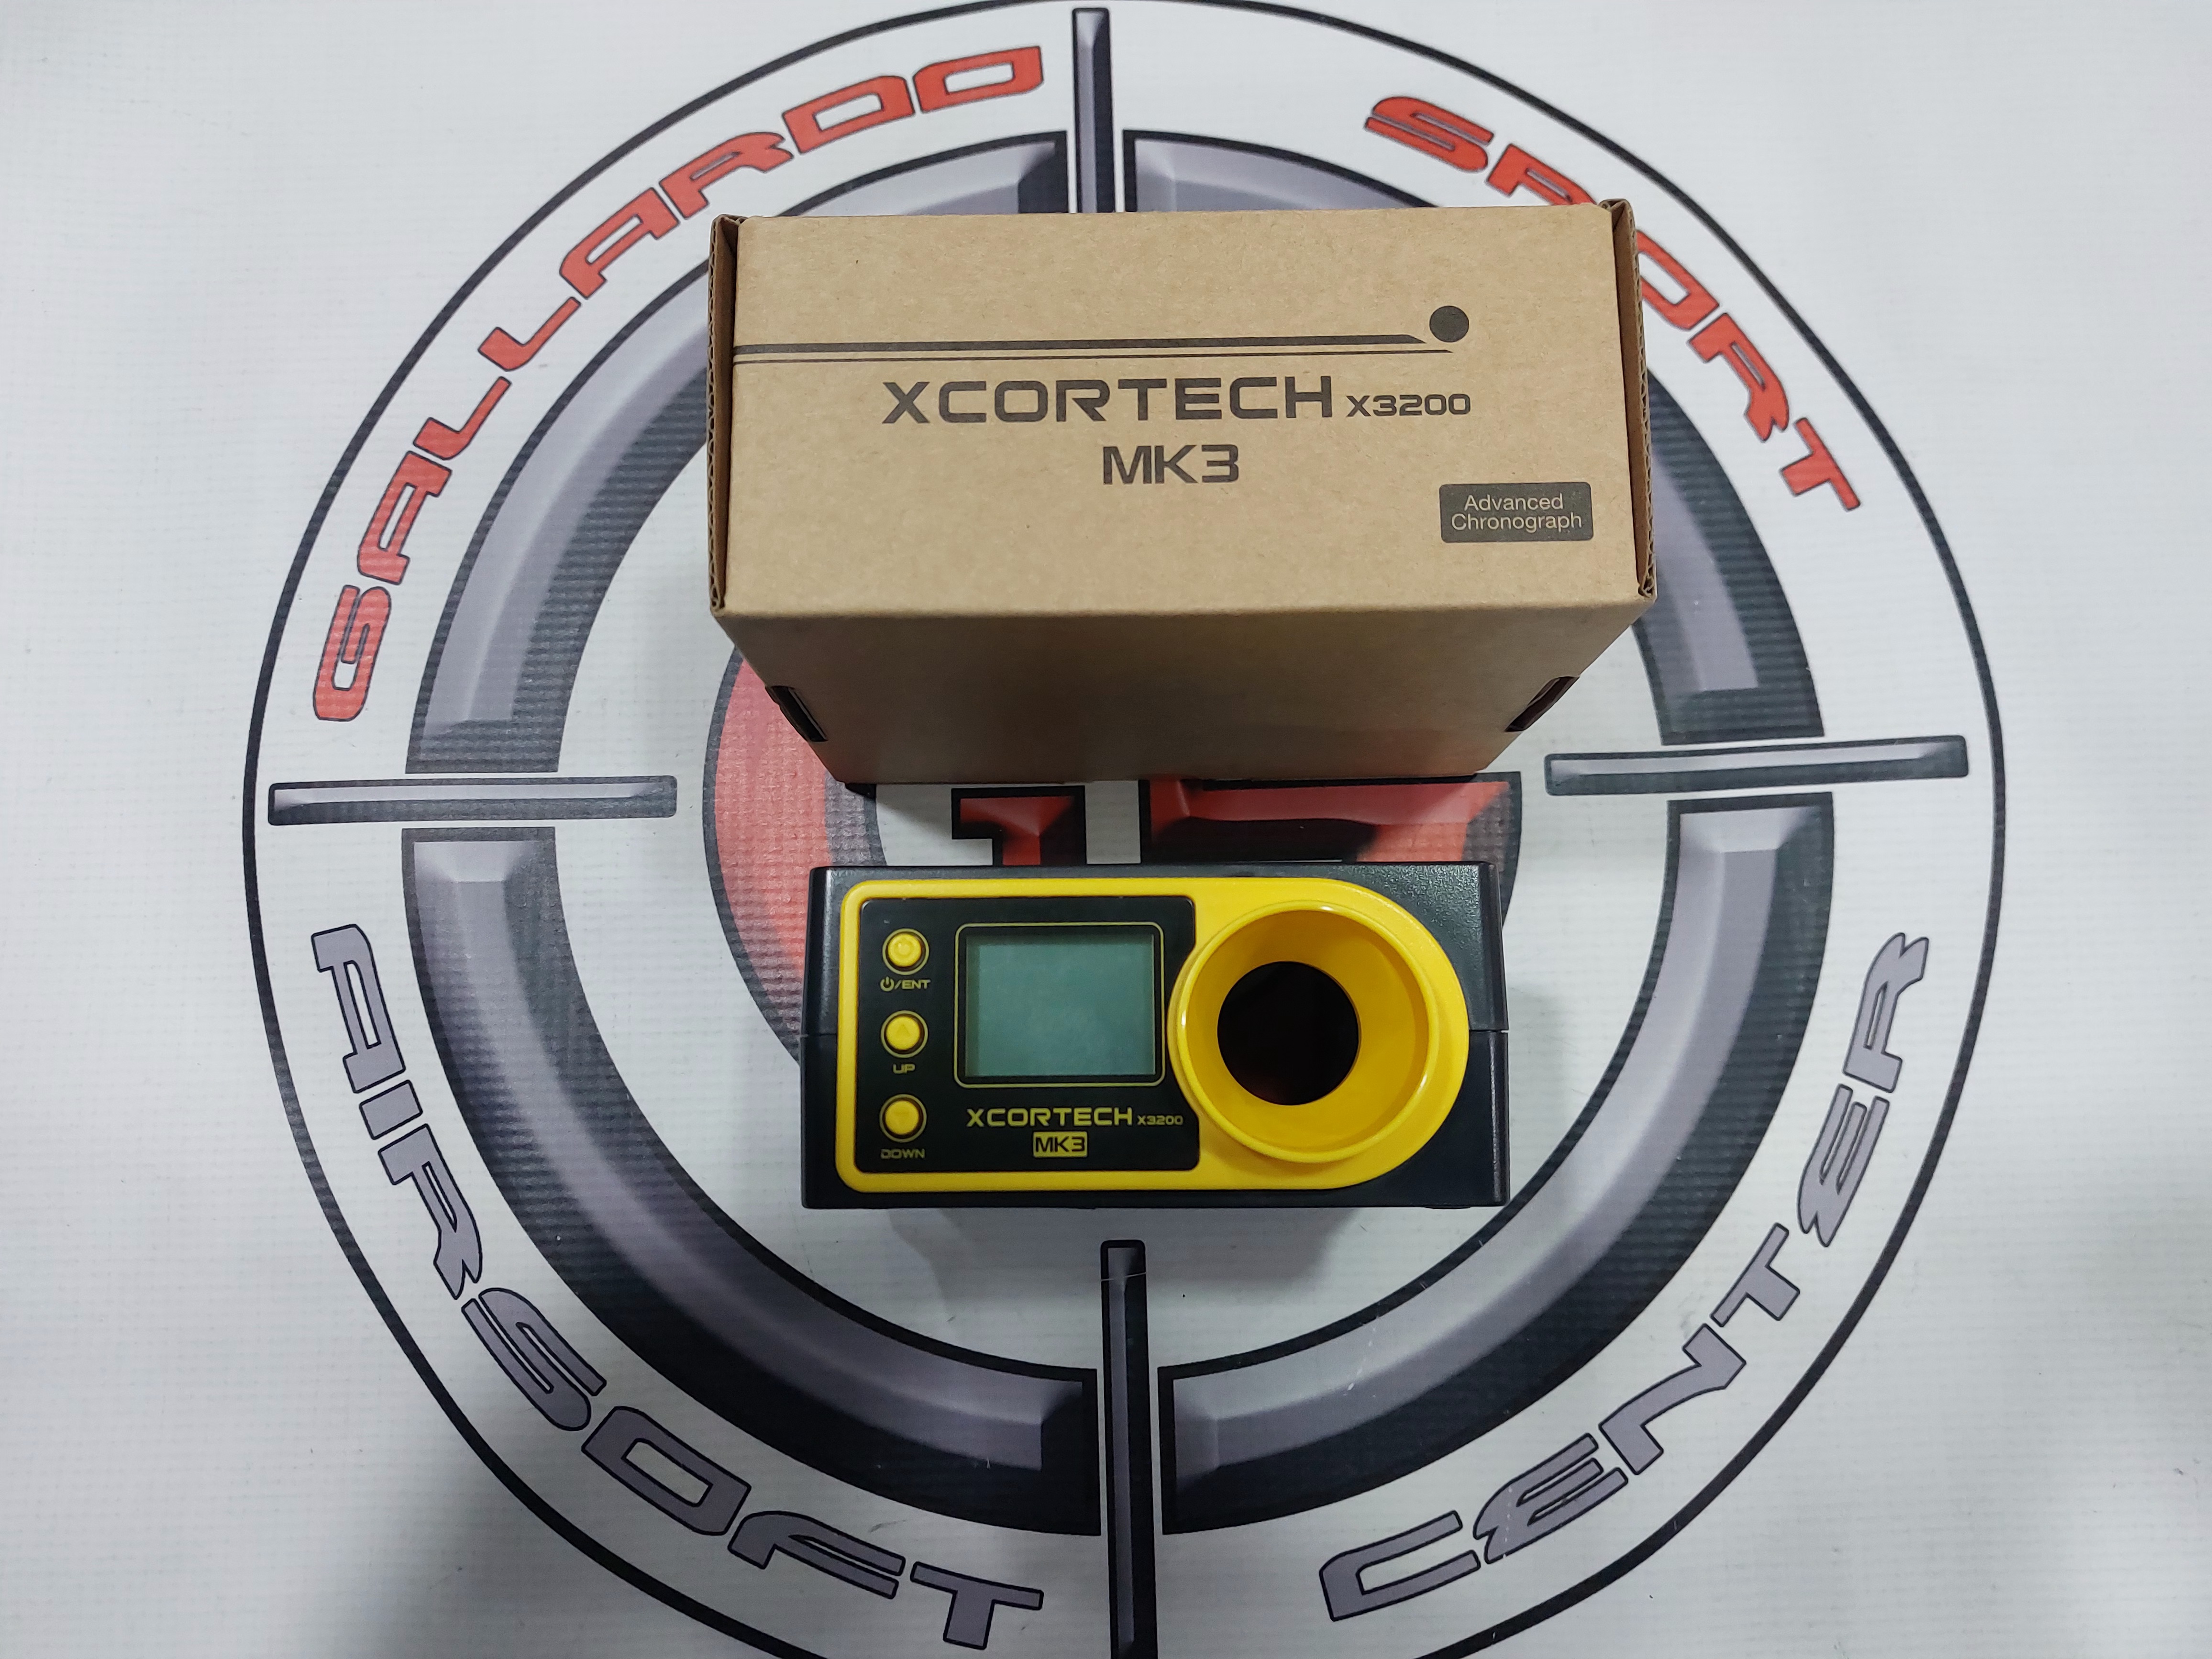 Cronografo X3200 MK3 Xcortech